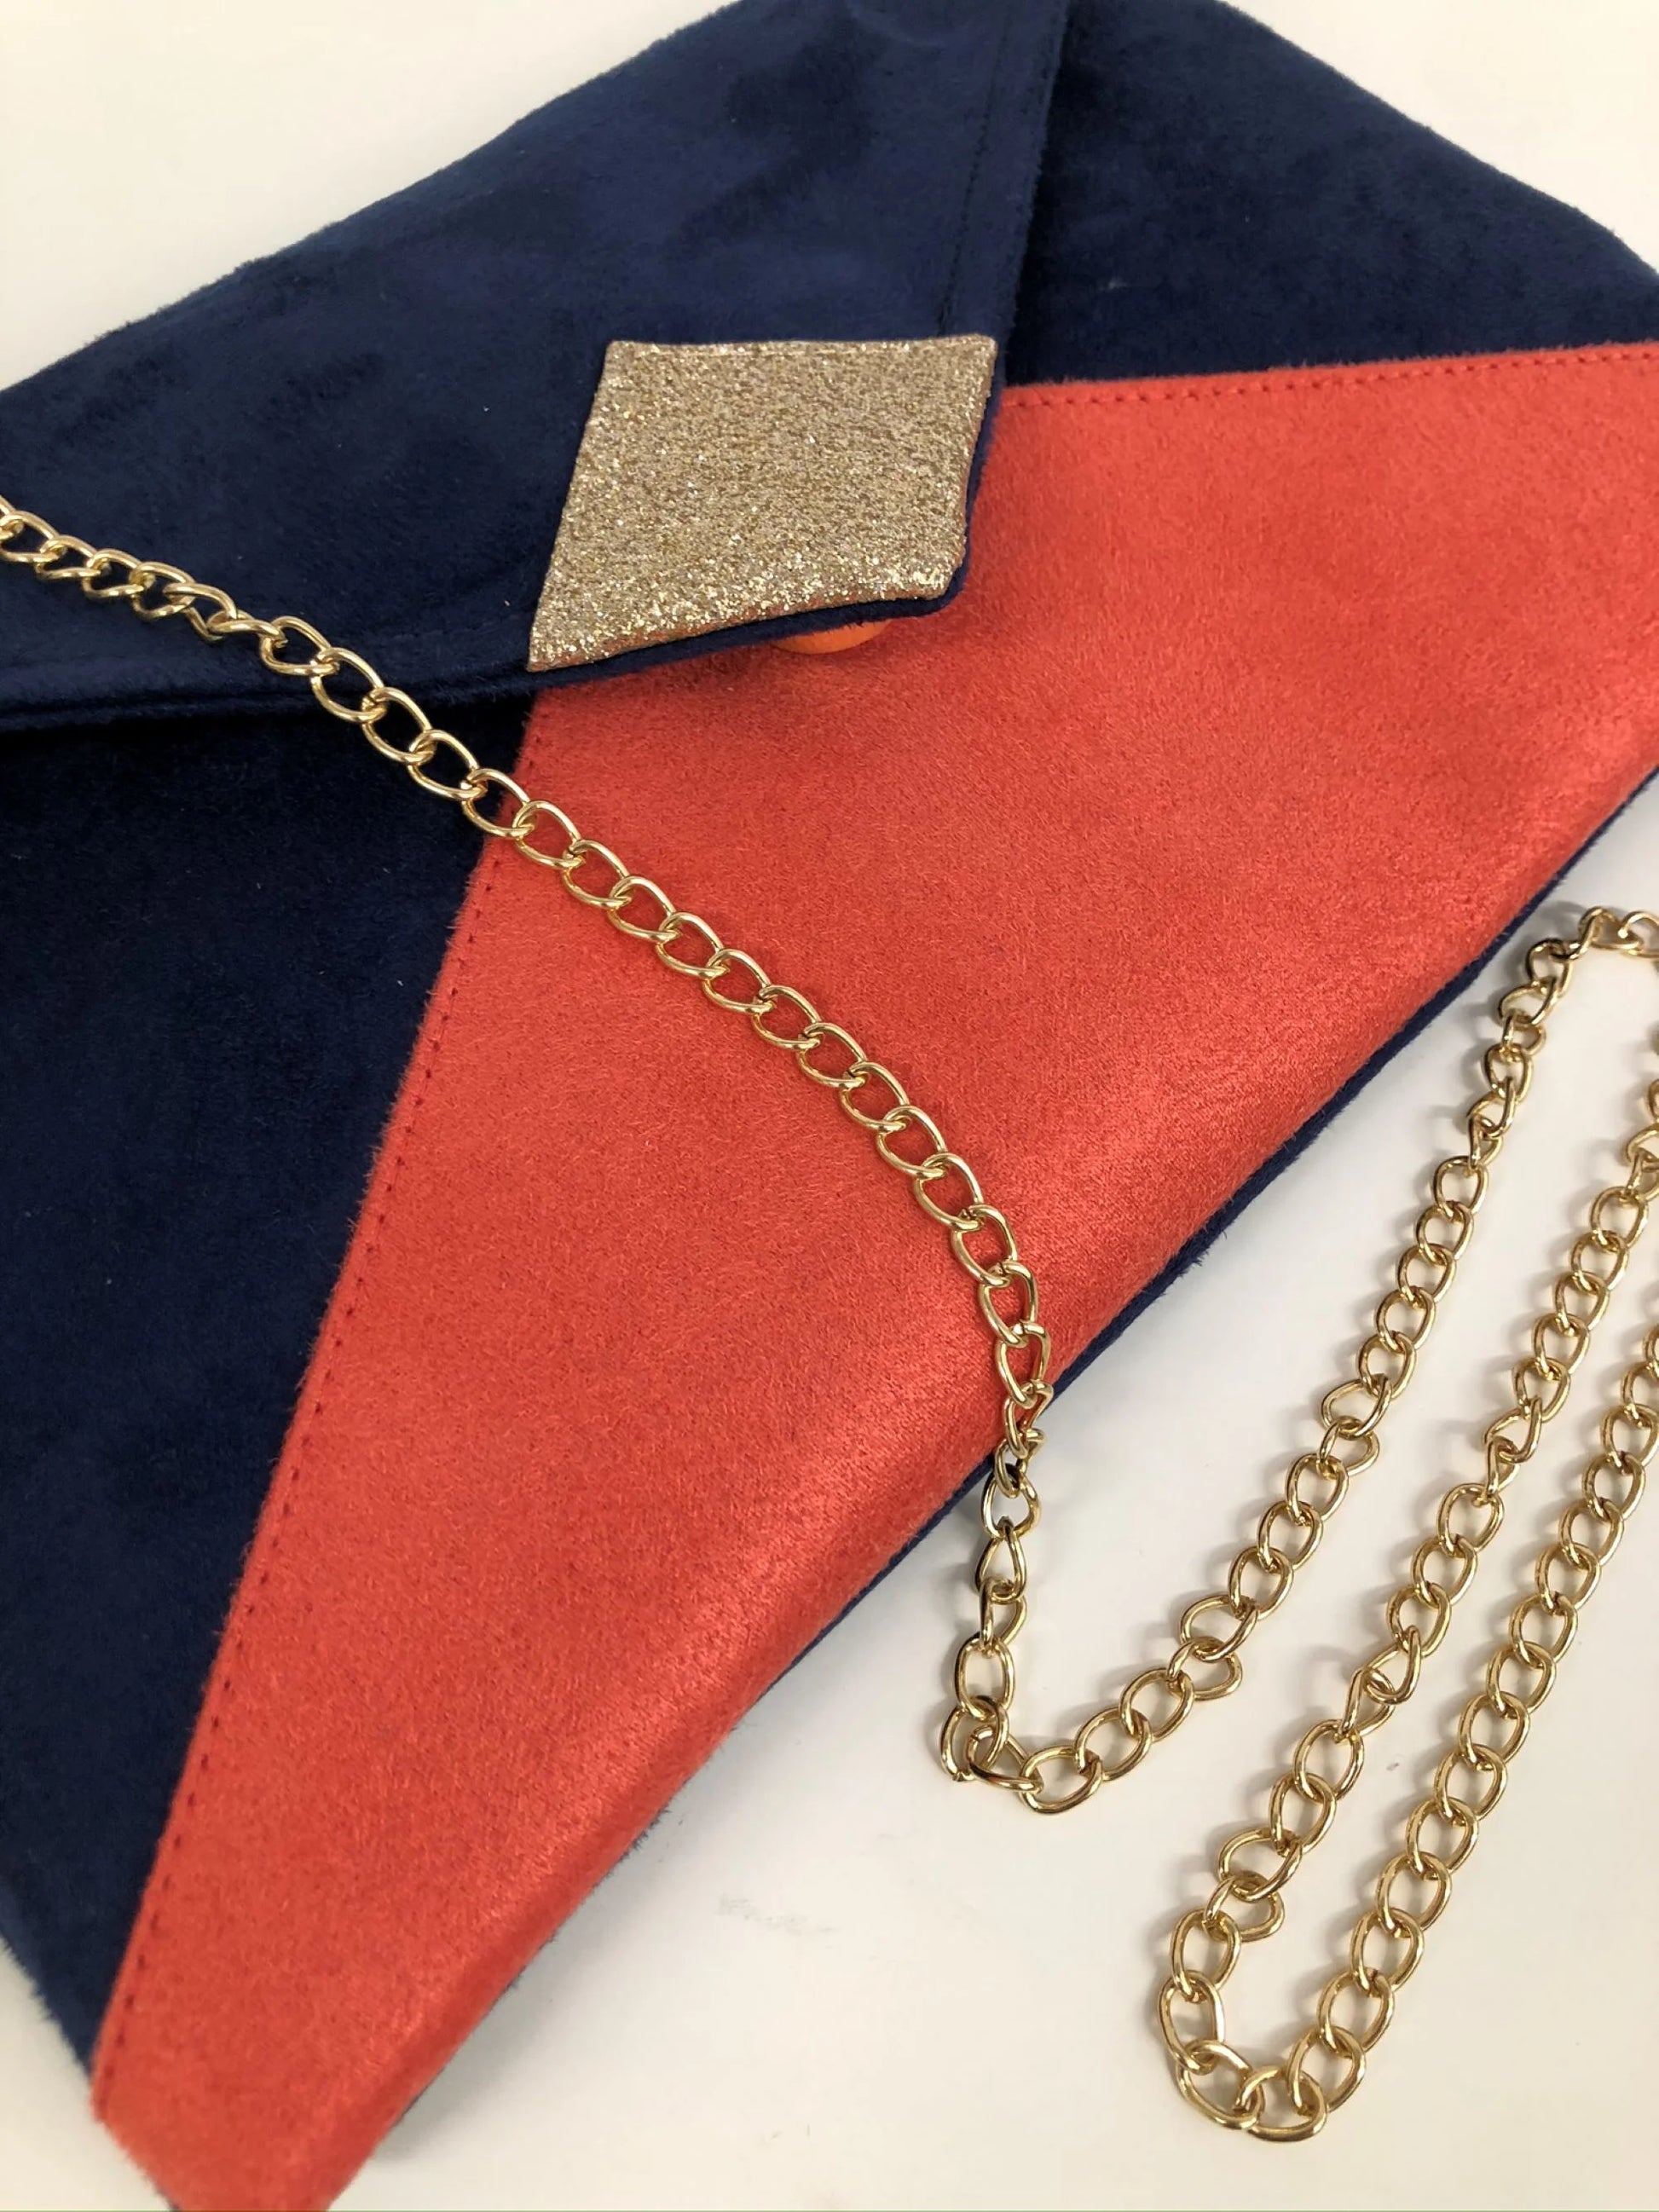 Vue détaillée du sac pochette Isa bleu marine et corail à paillettes dorées.